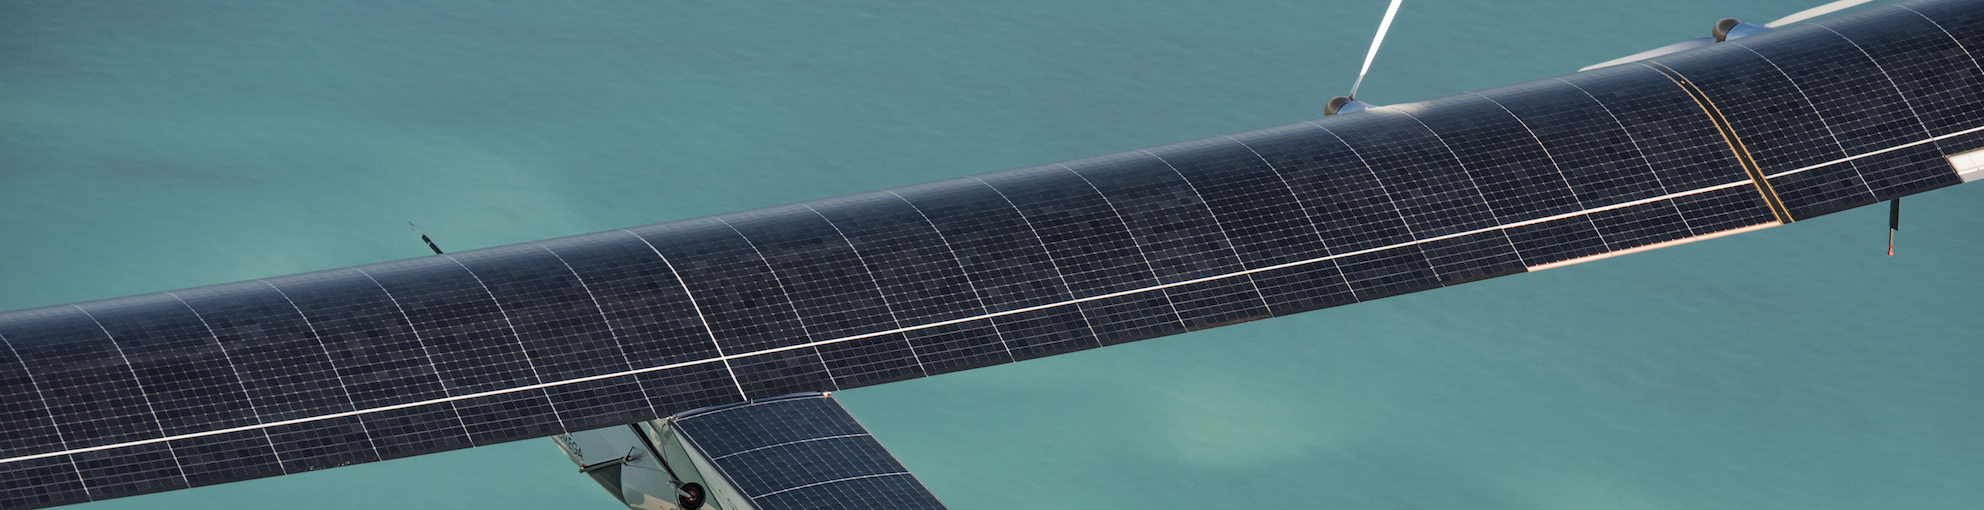 La résistance mécanique des cellules solaires qui équipent le Solar Impulse a été modélisée et testée chez Solvay. © Solar Impulse